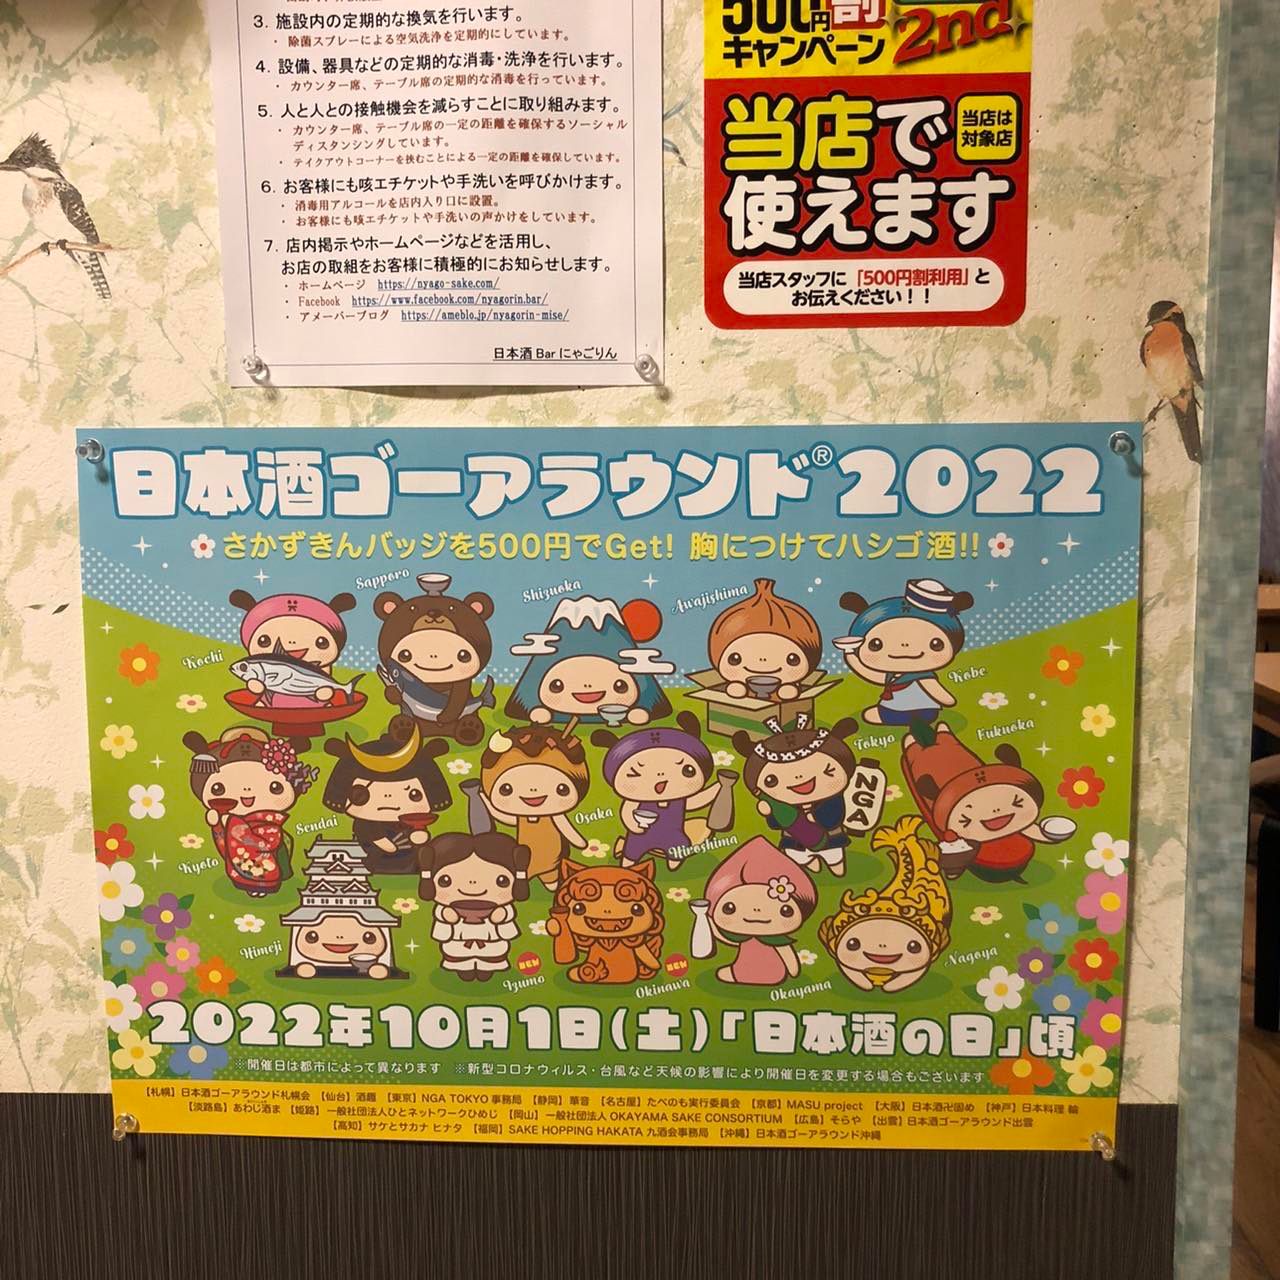 ●日本酒ゴーアラウンド2022のポスターを貼りました。